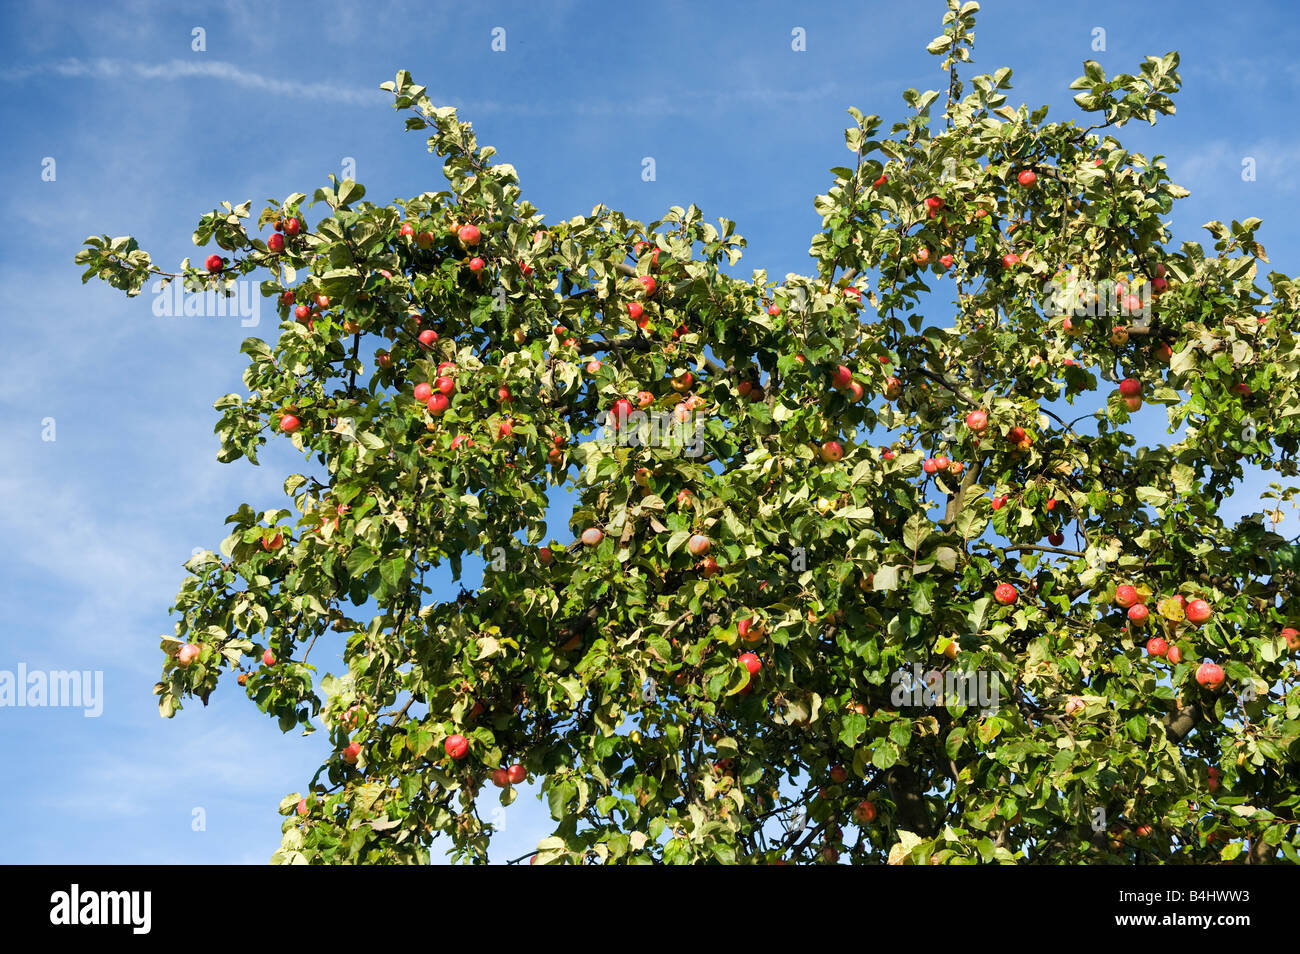 Grande albero di mele con mele mature per la raccolta di cielo blu le mele rosse ricca grande raccolto giardino giardiniere ROSSO VERDE GIALLO bl di frutta Foto Stock